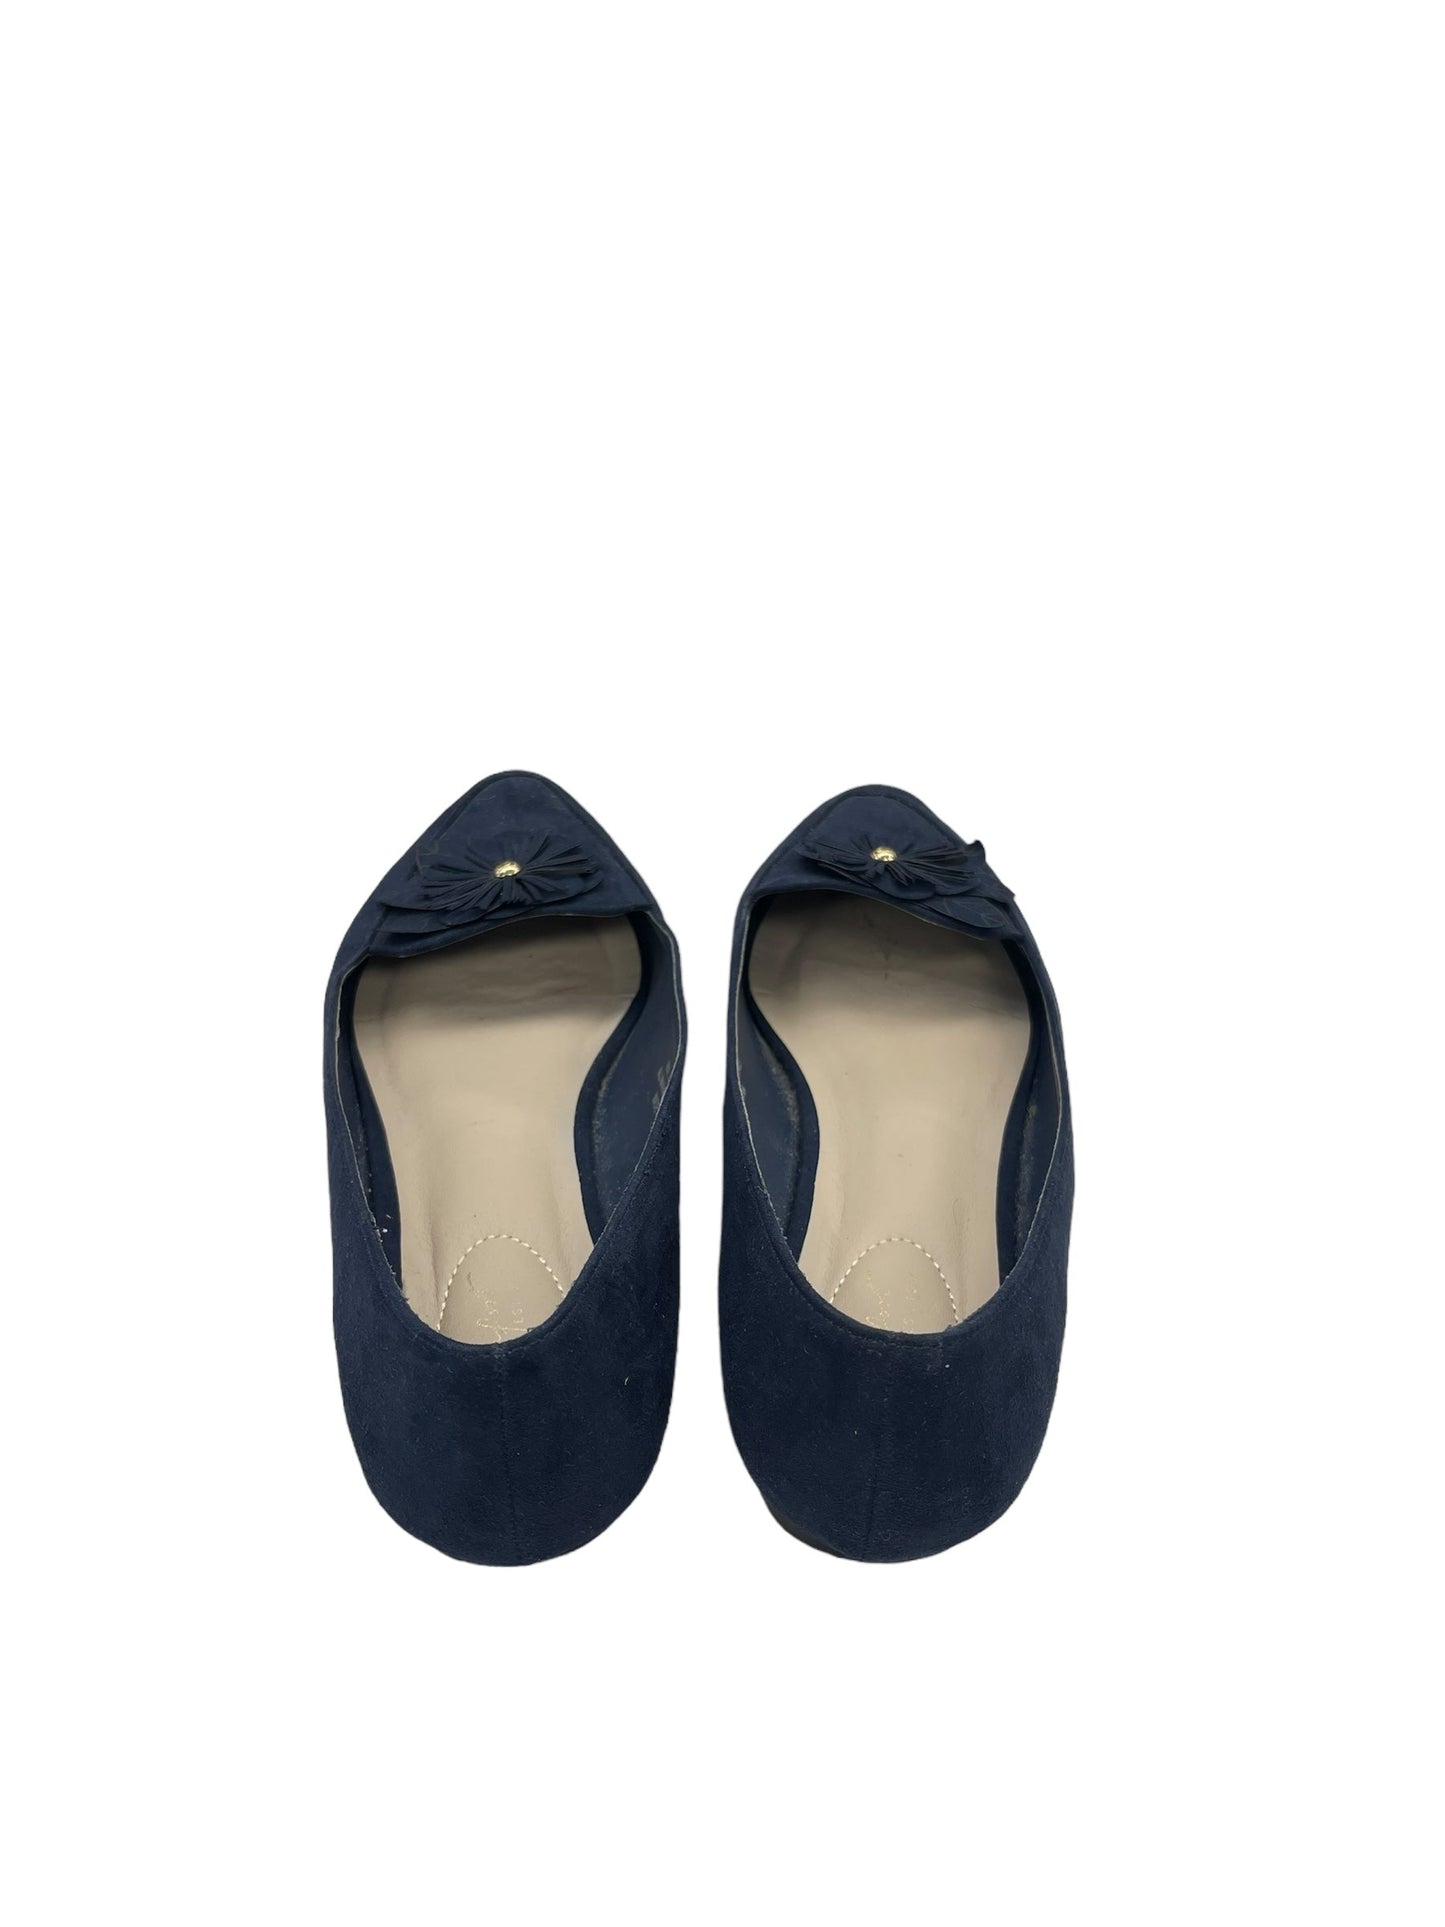 Blue Shoes Flats Comfort Plus, Size 8